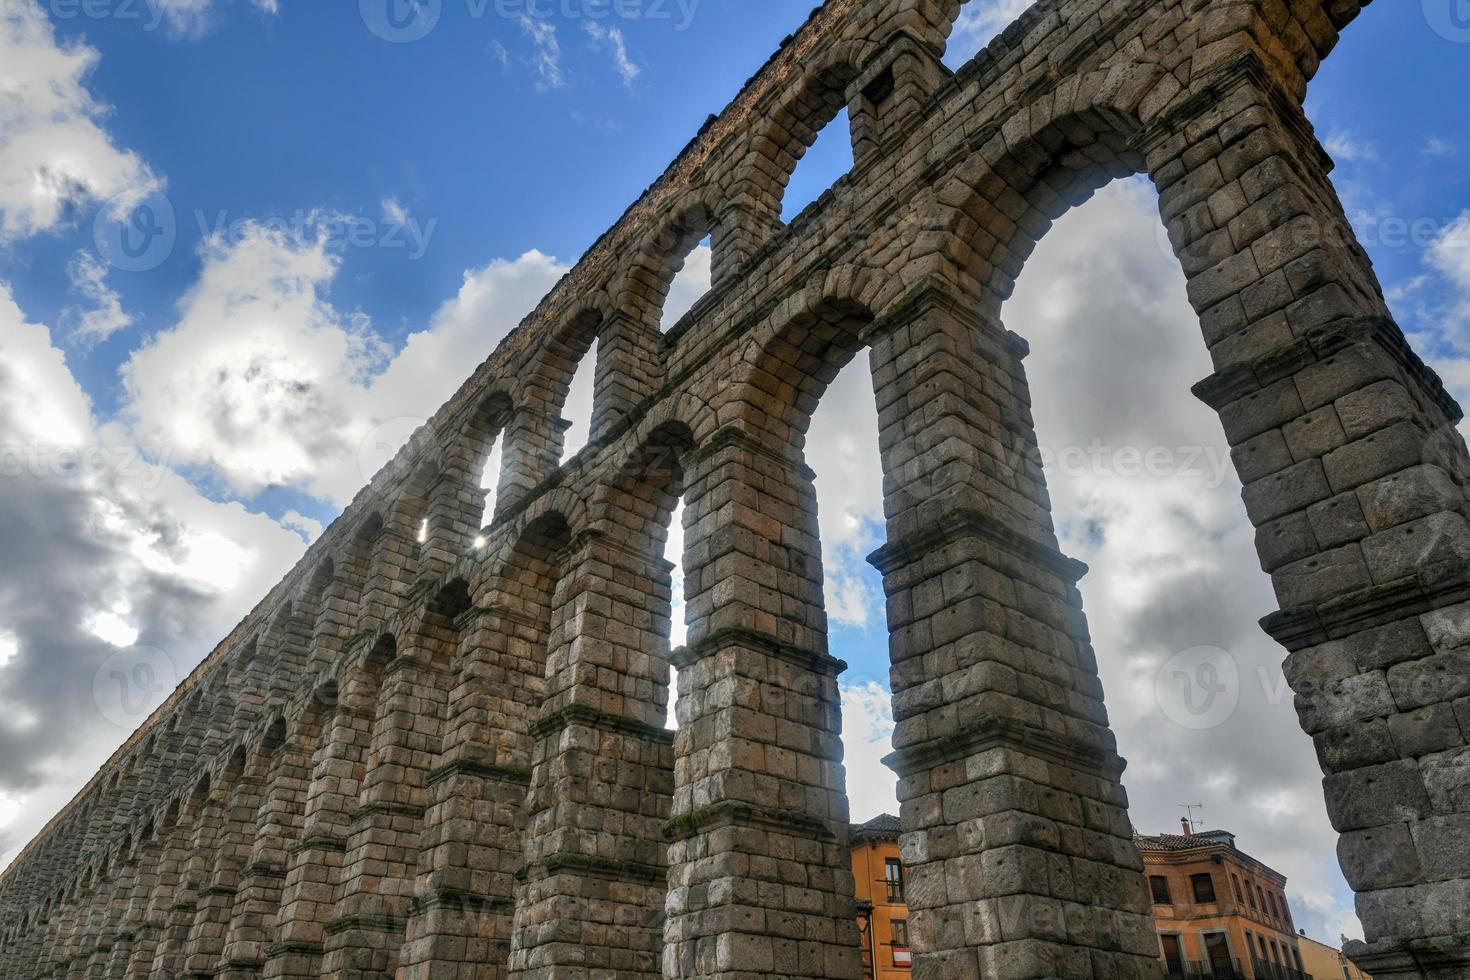 Ancient Roman aqueduct on Plaza del Azoguejo square in Segovia, Spain. photo